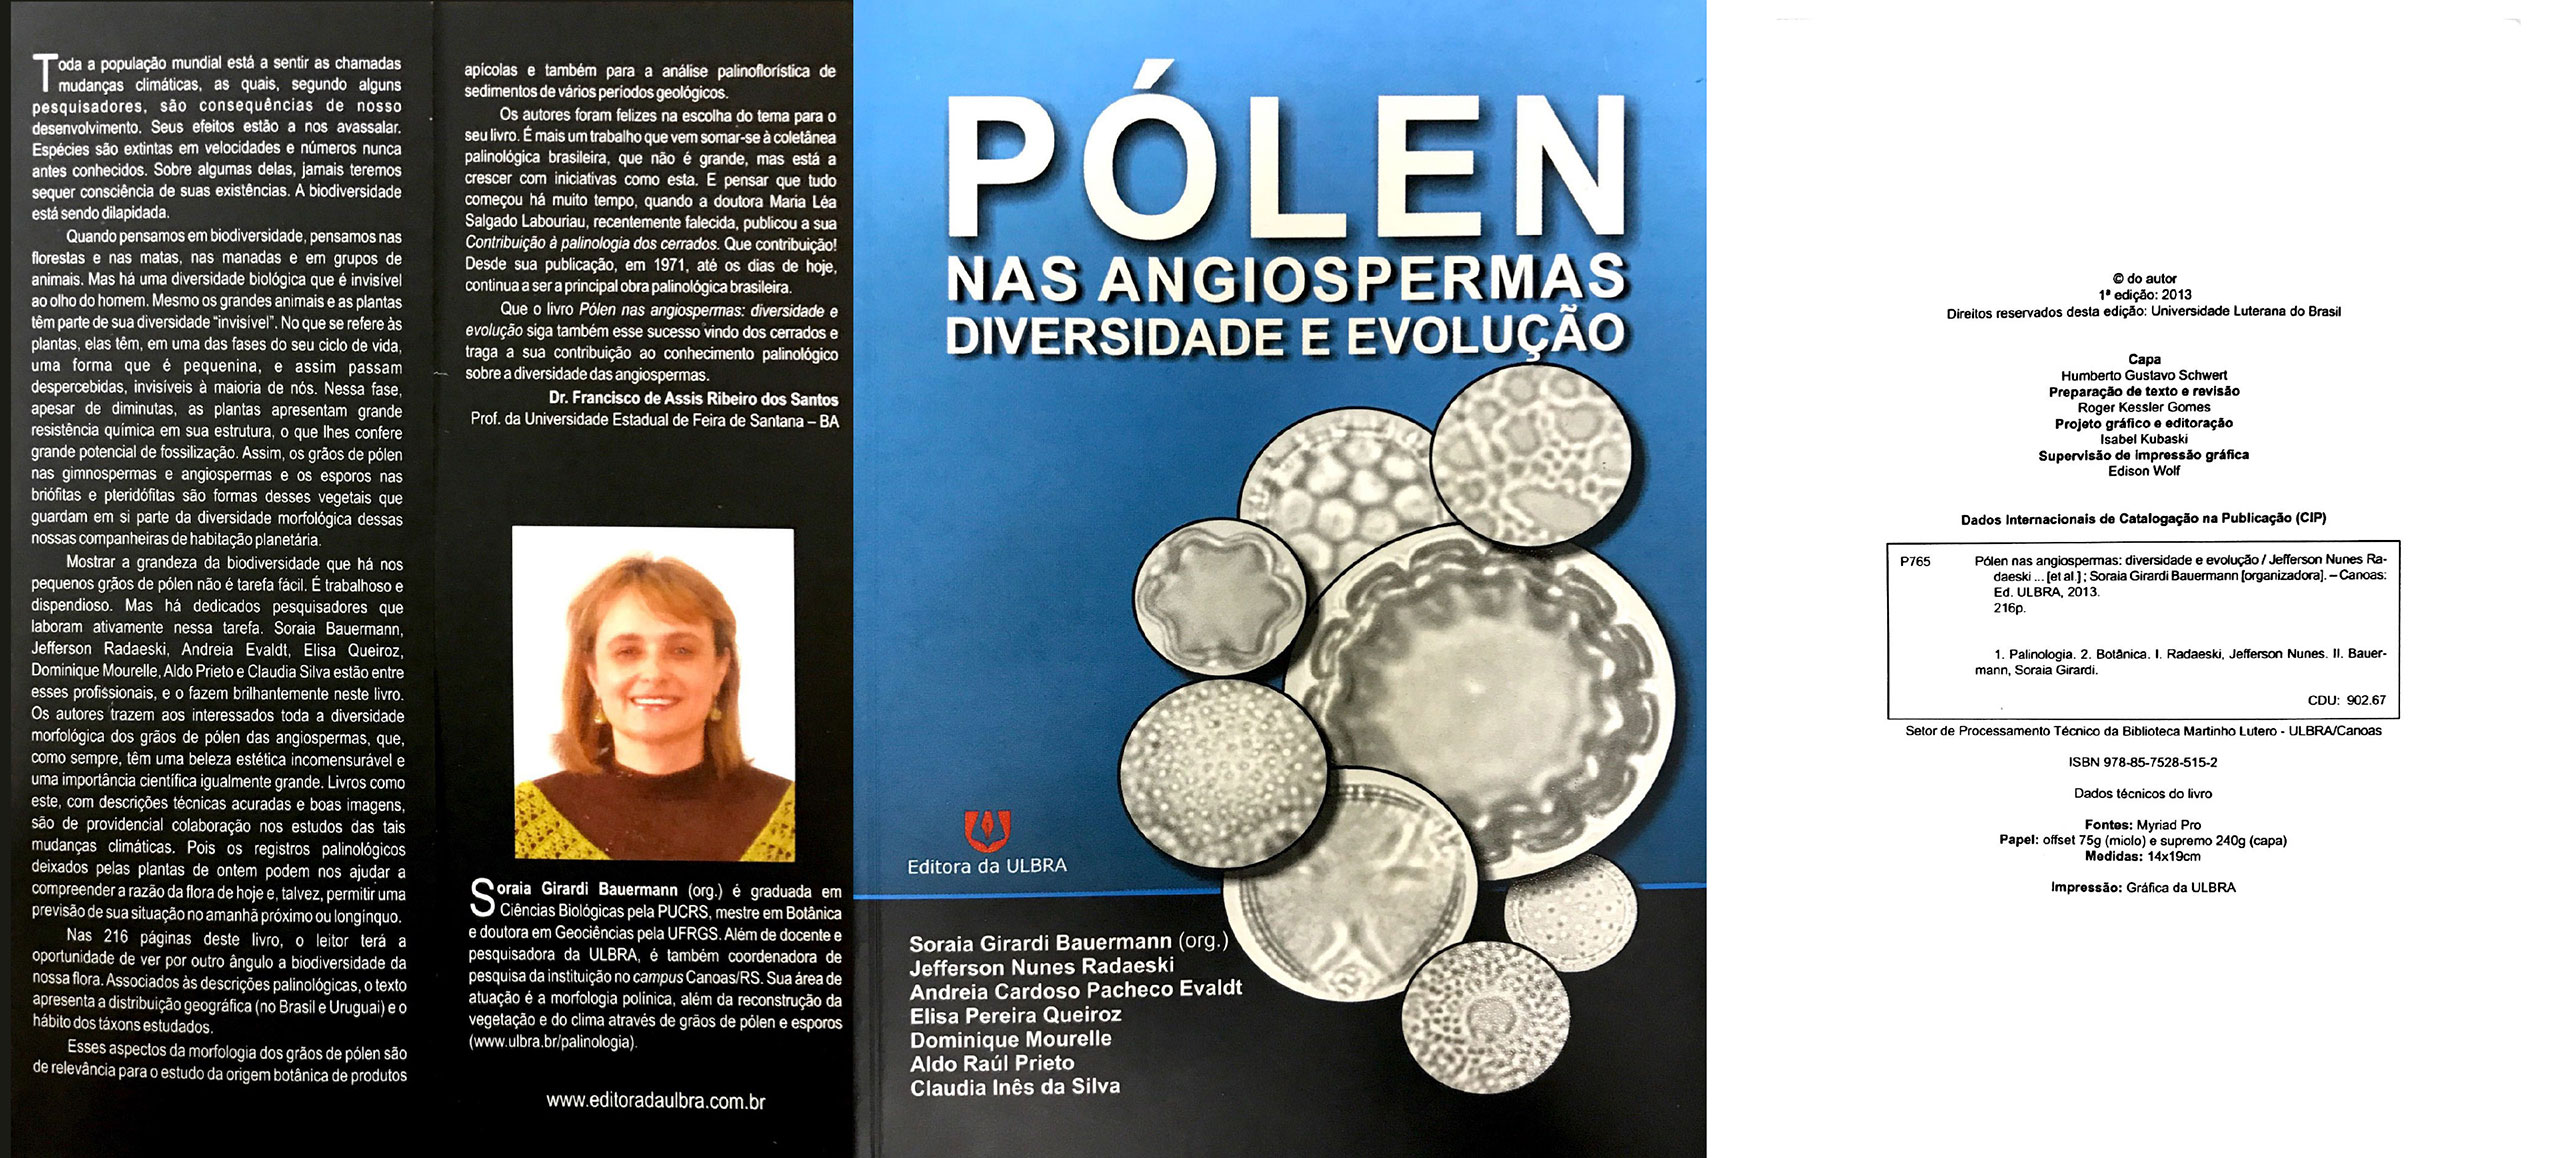 Polen nas Angiospermas - Diversidade e evolução